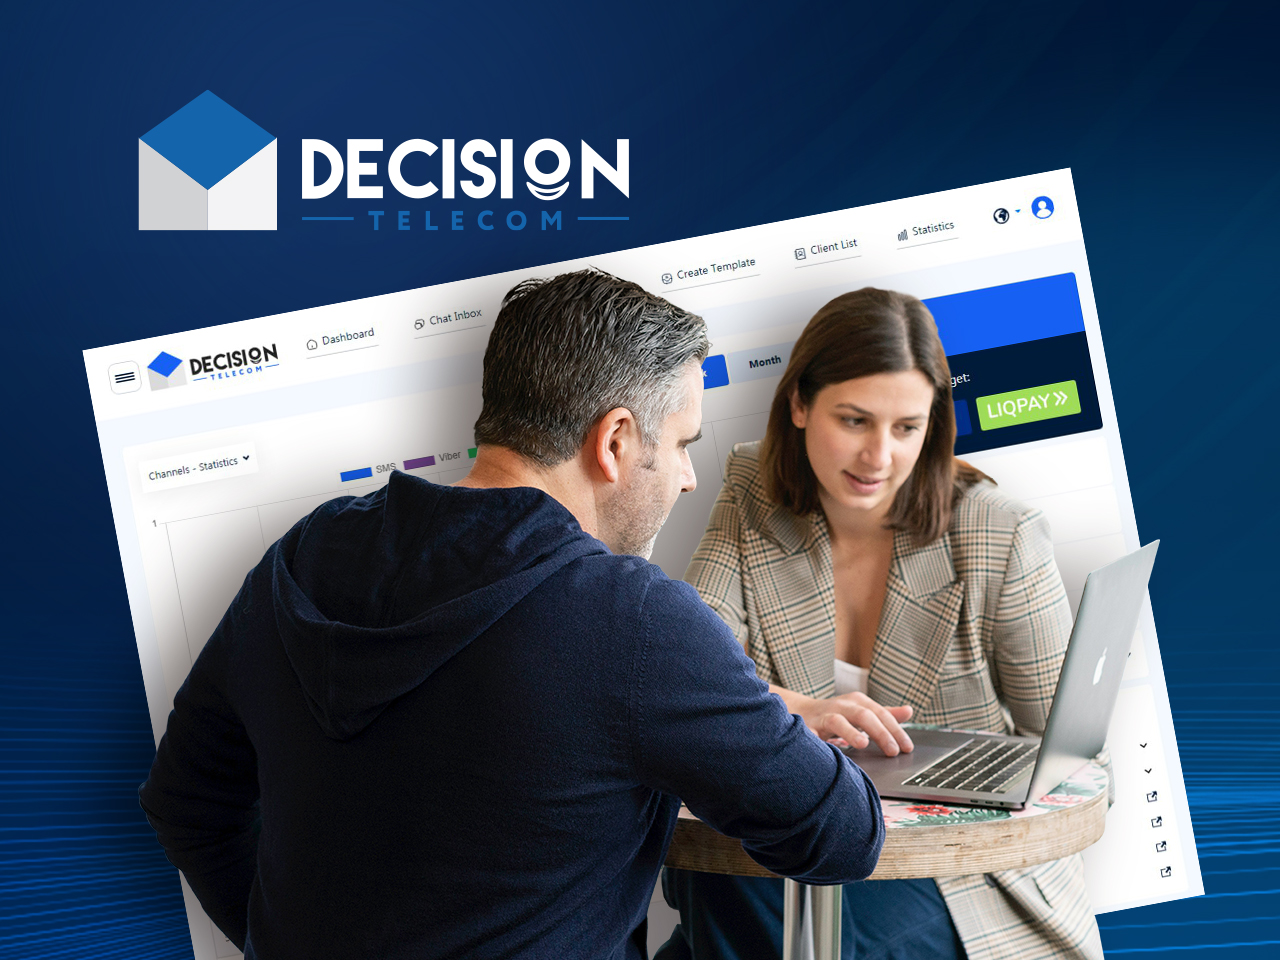 Вітайте новий вебдизайн адмінпанелі Decision Telecom!